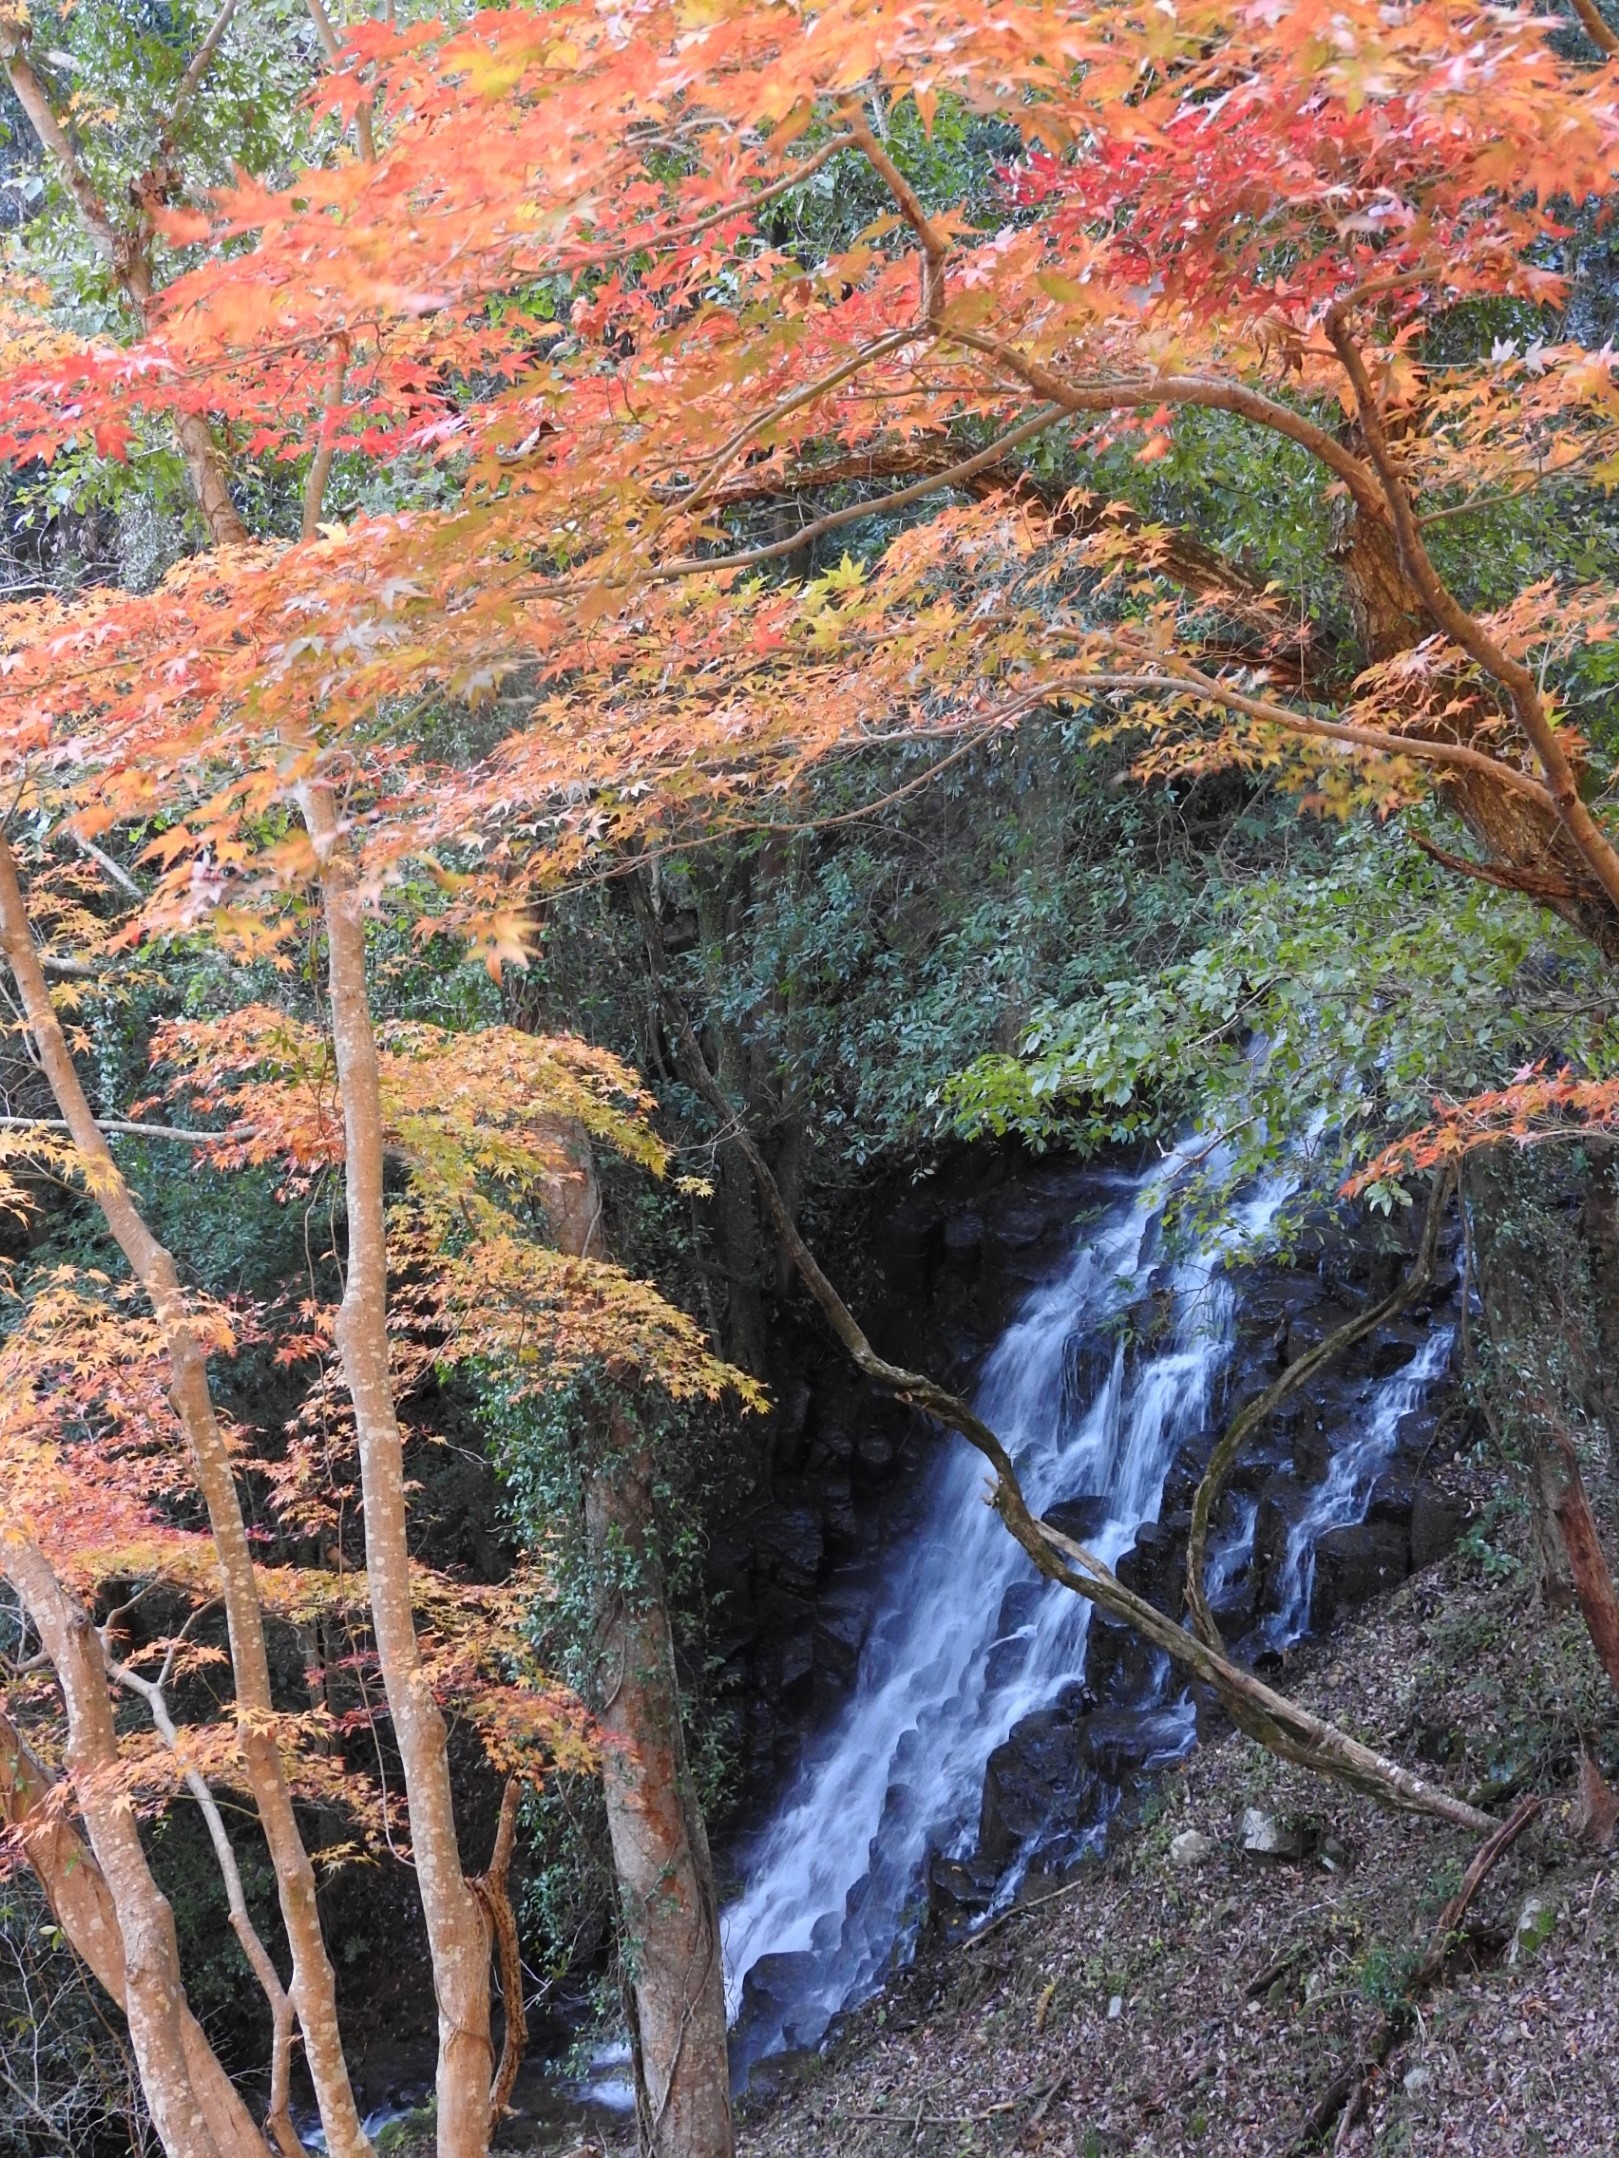 【７】伊豆市堀切の「雄飛の滝」周辺はモミジが多く、秋の紅葉シーズンには滝とのコントラストが鮮やか。地元の人によれば昔、大平の「旭滝」に対して「夕日滝」と呼んだが、いつしか観光用で「雄飛の滝」になったとか